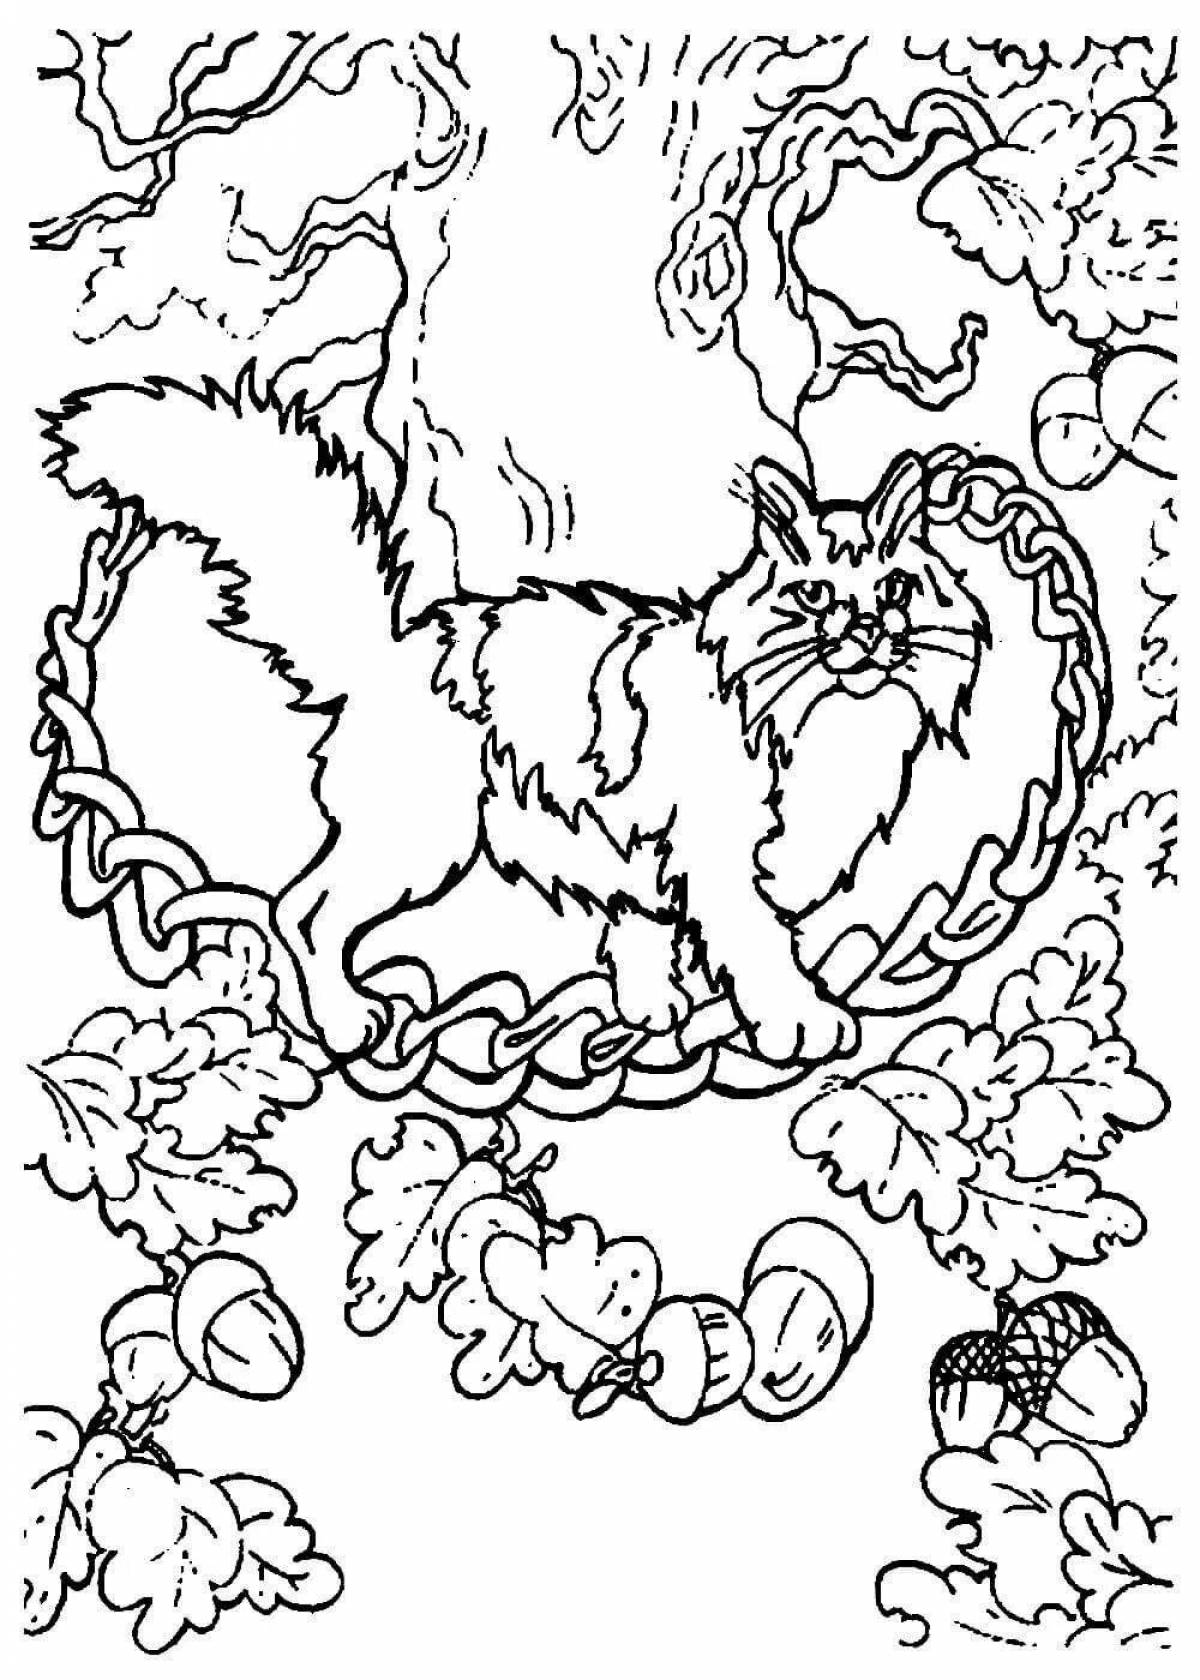 Рисунок к стихотворению пушкина у лукоморья дуб зеленый детские